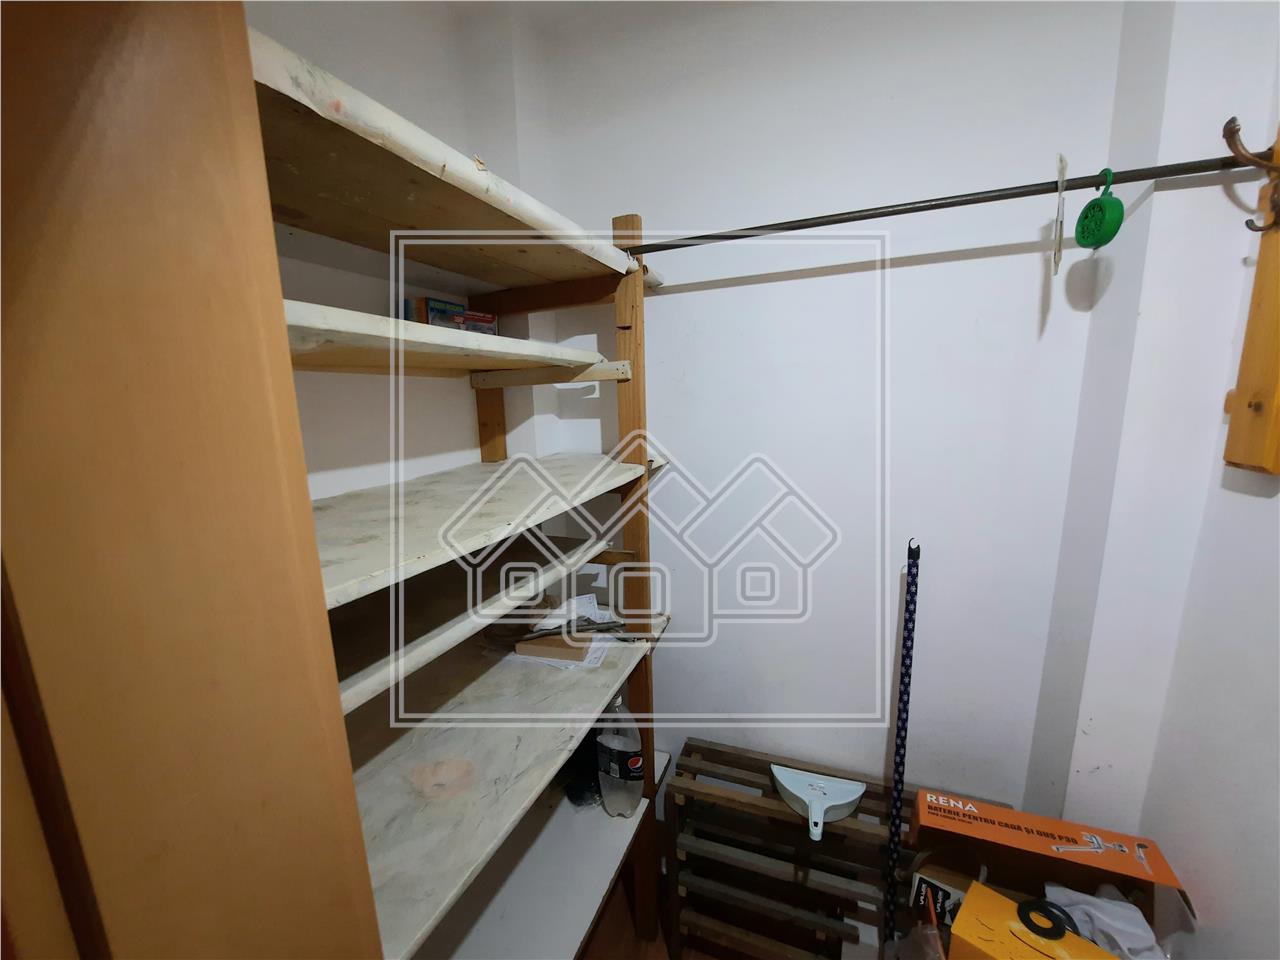 Apartment for sale in Alba Iulia - 2 rooms - Center area